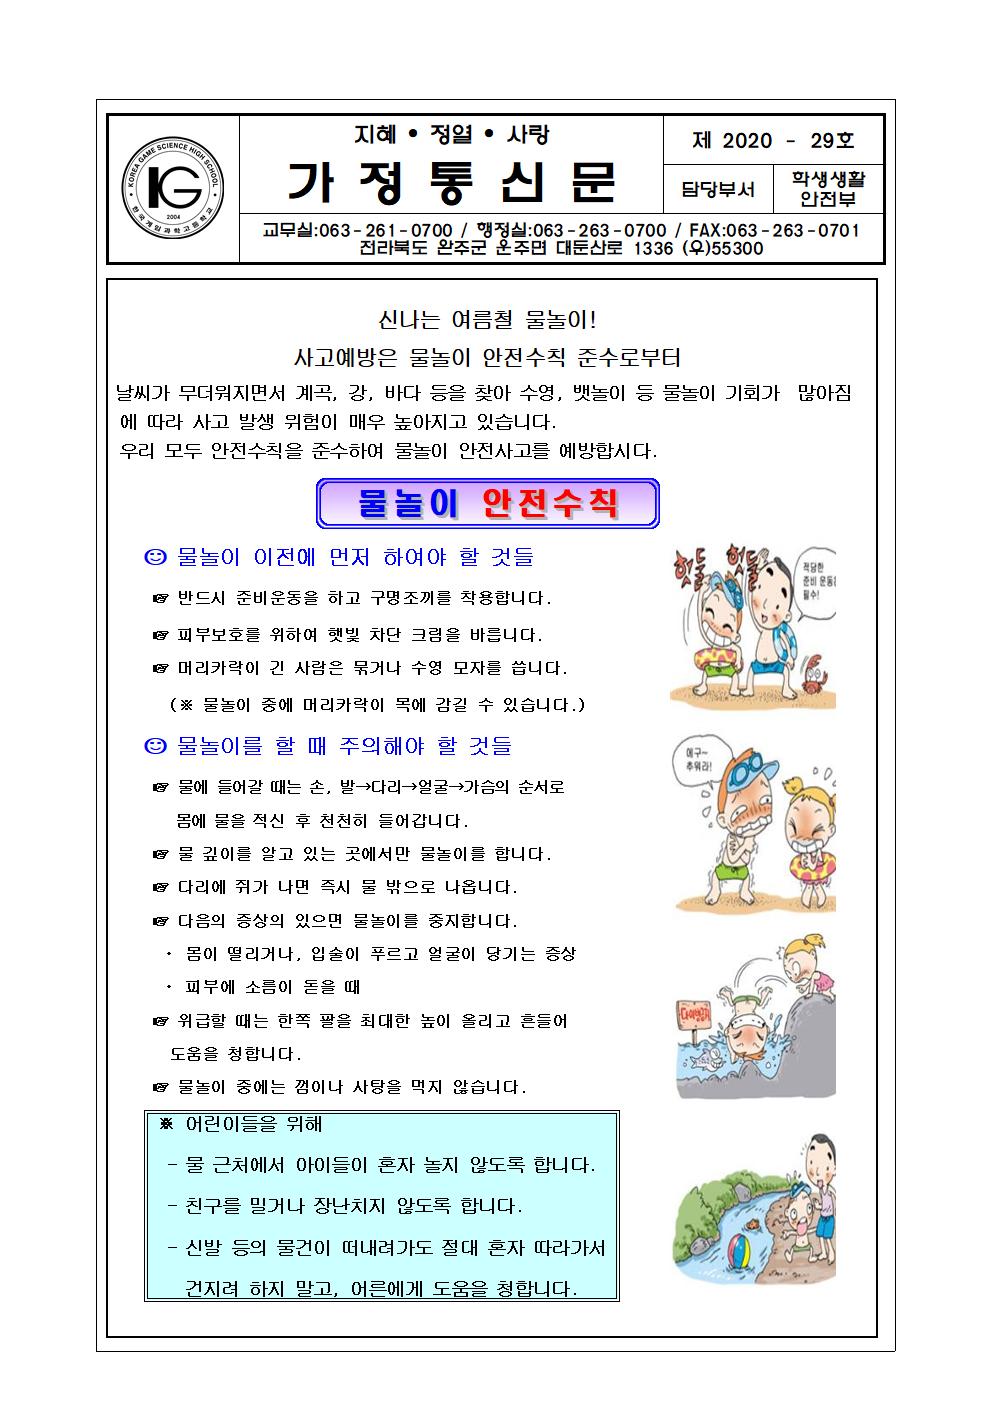 물놀이 안전사고예방 가정통신문(2020.6.16001